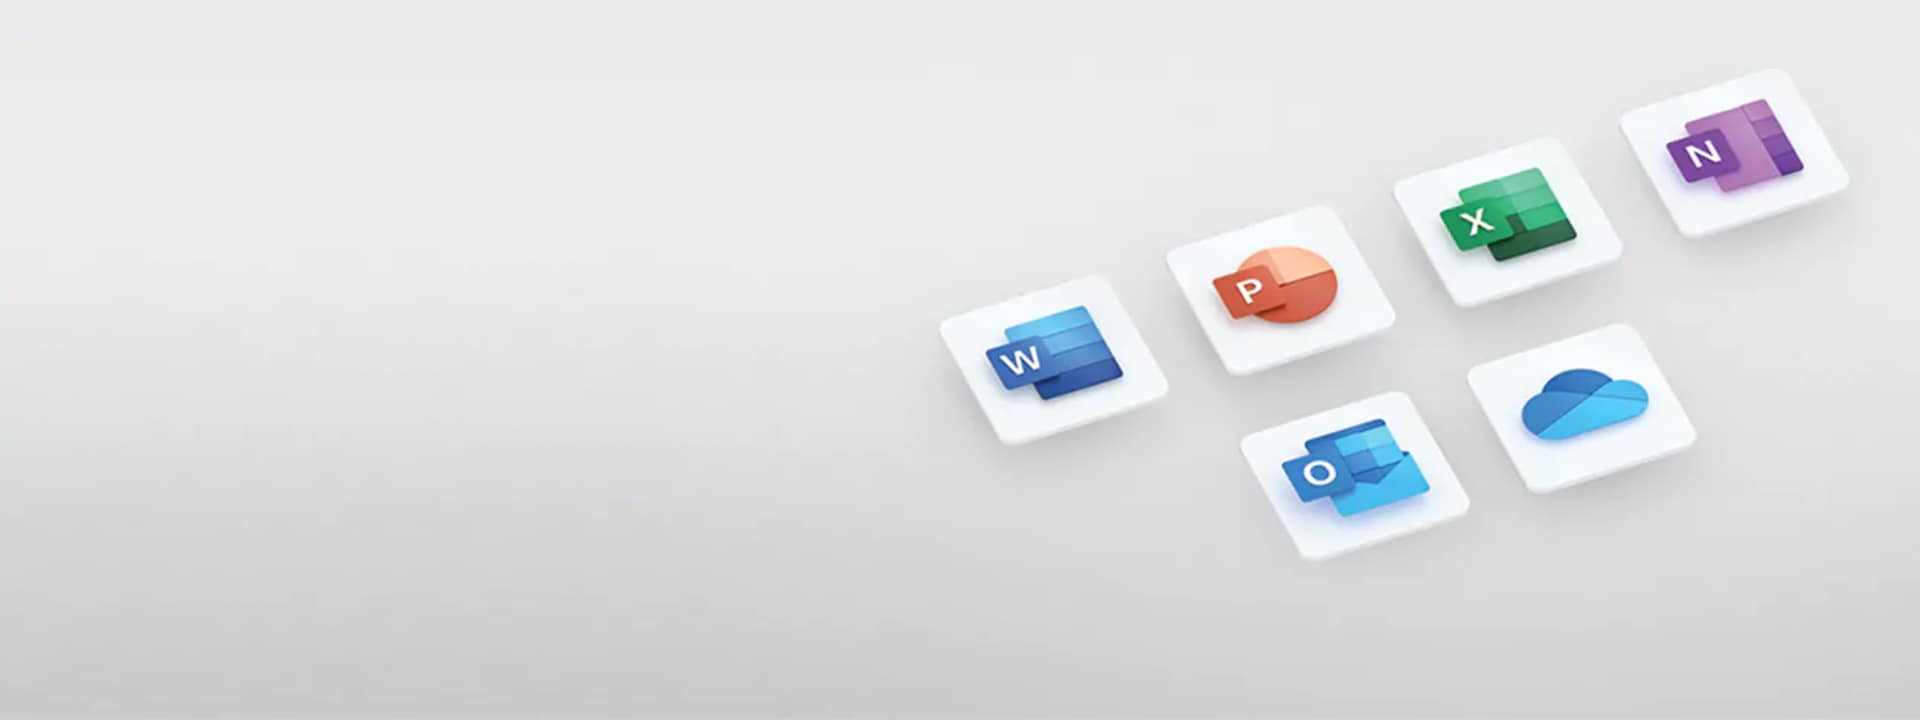 Office 365 on nyt Microsoft 365 - Gigantti verkkokauppa